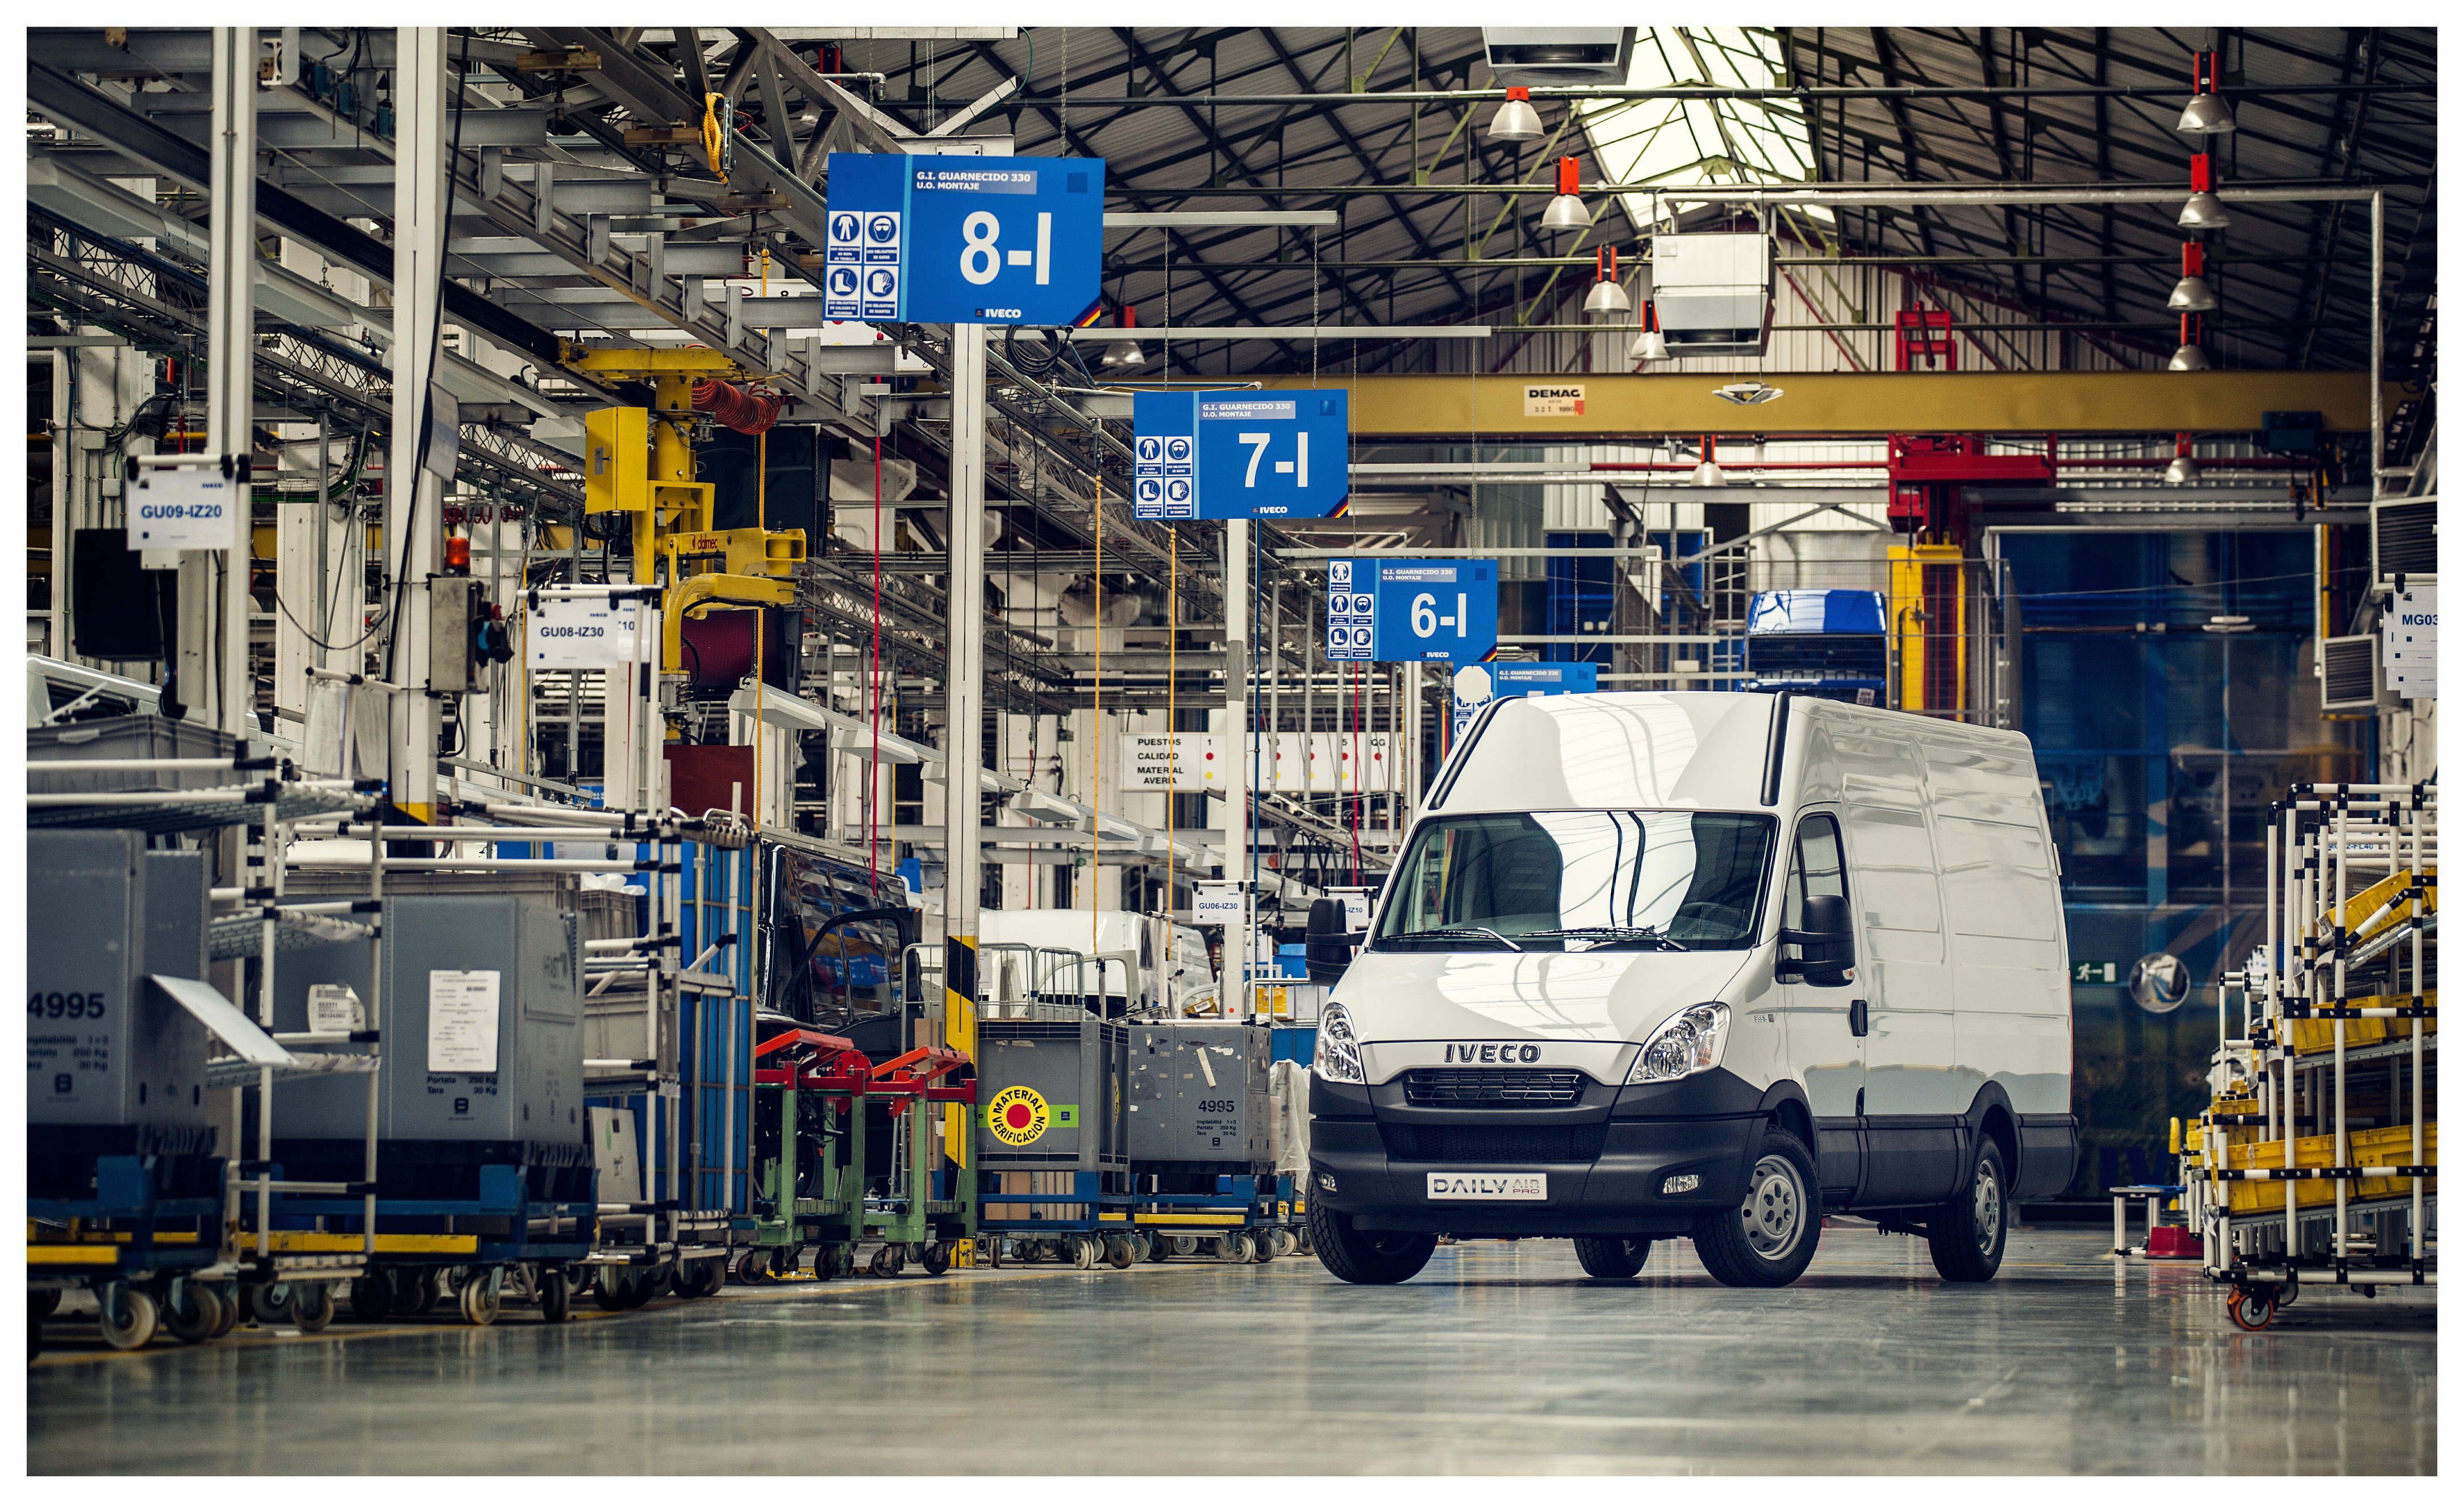 La planta de Iveco en Valladolid produce el modelo Daily ‘clásico’ en versiones furgón y chasis cabina.